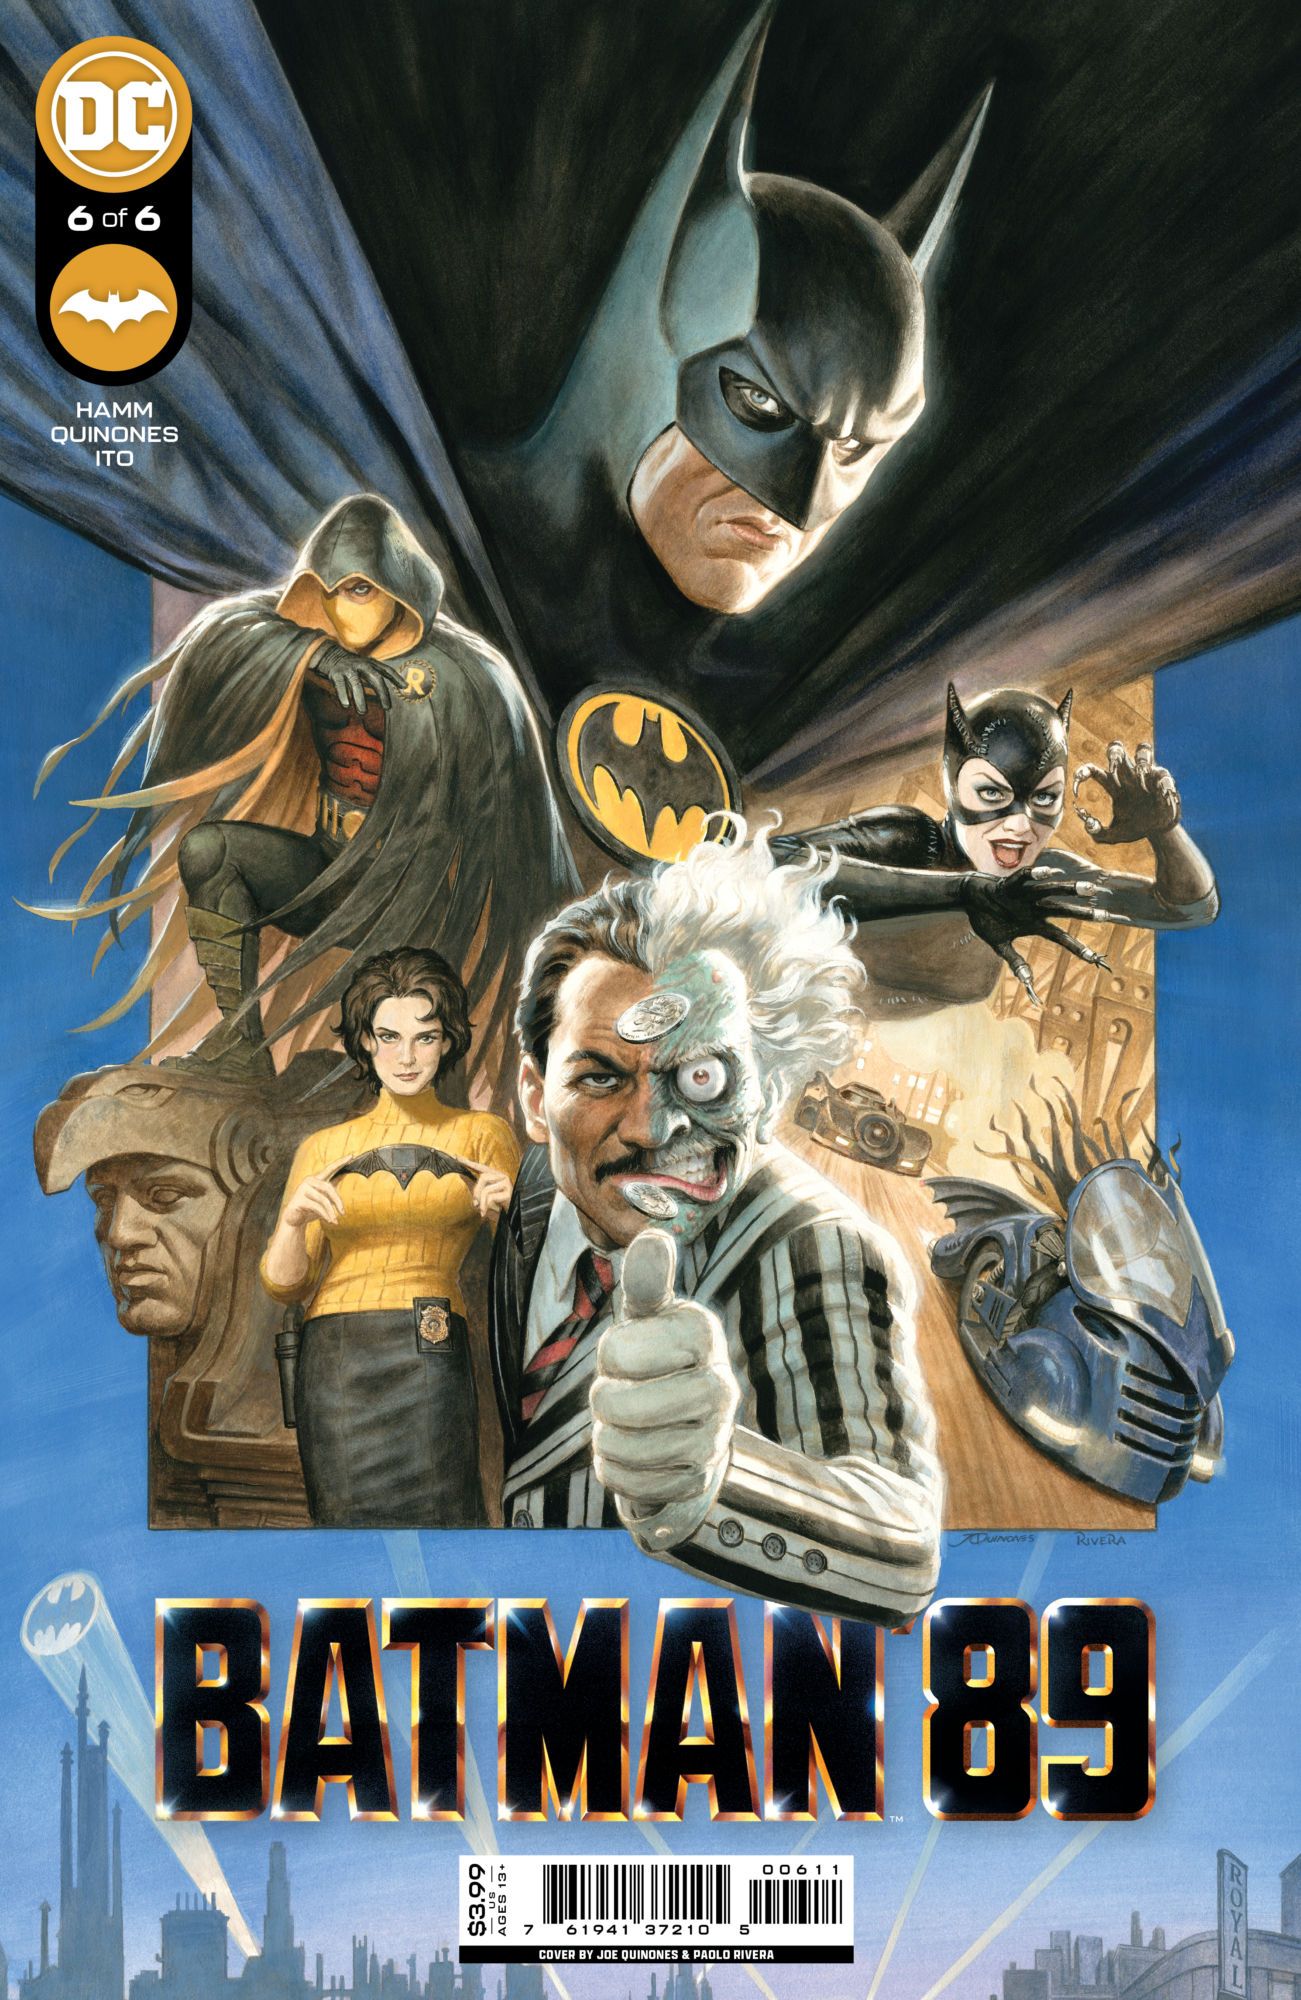 Batman '89 #6 cover